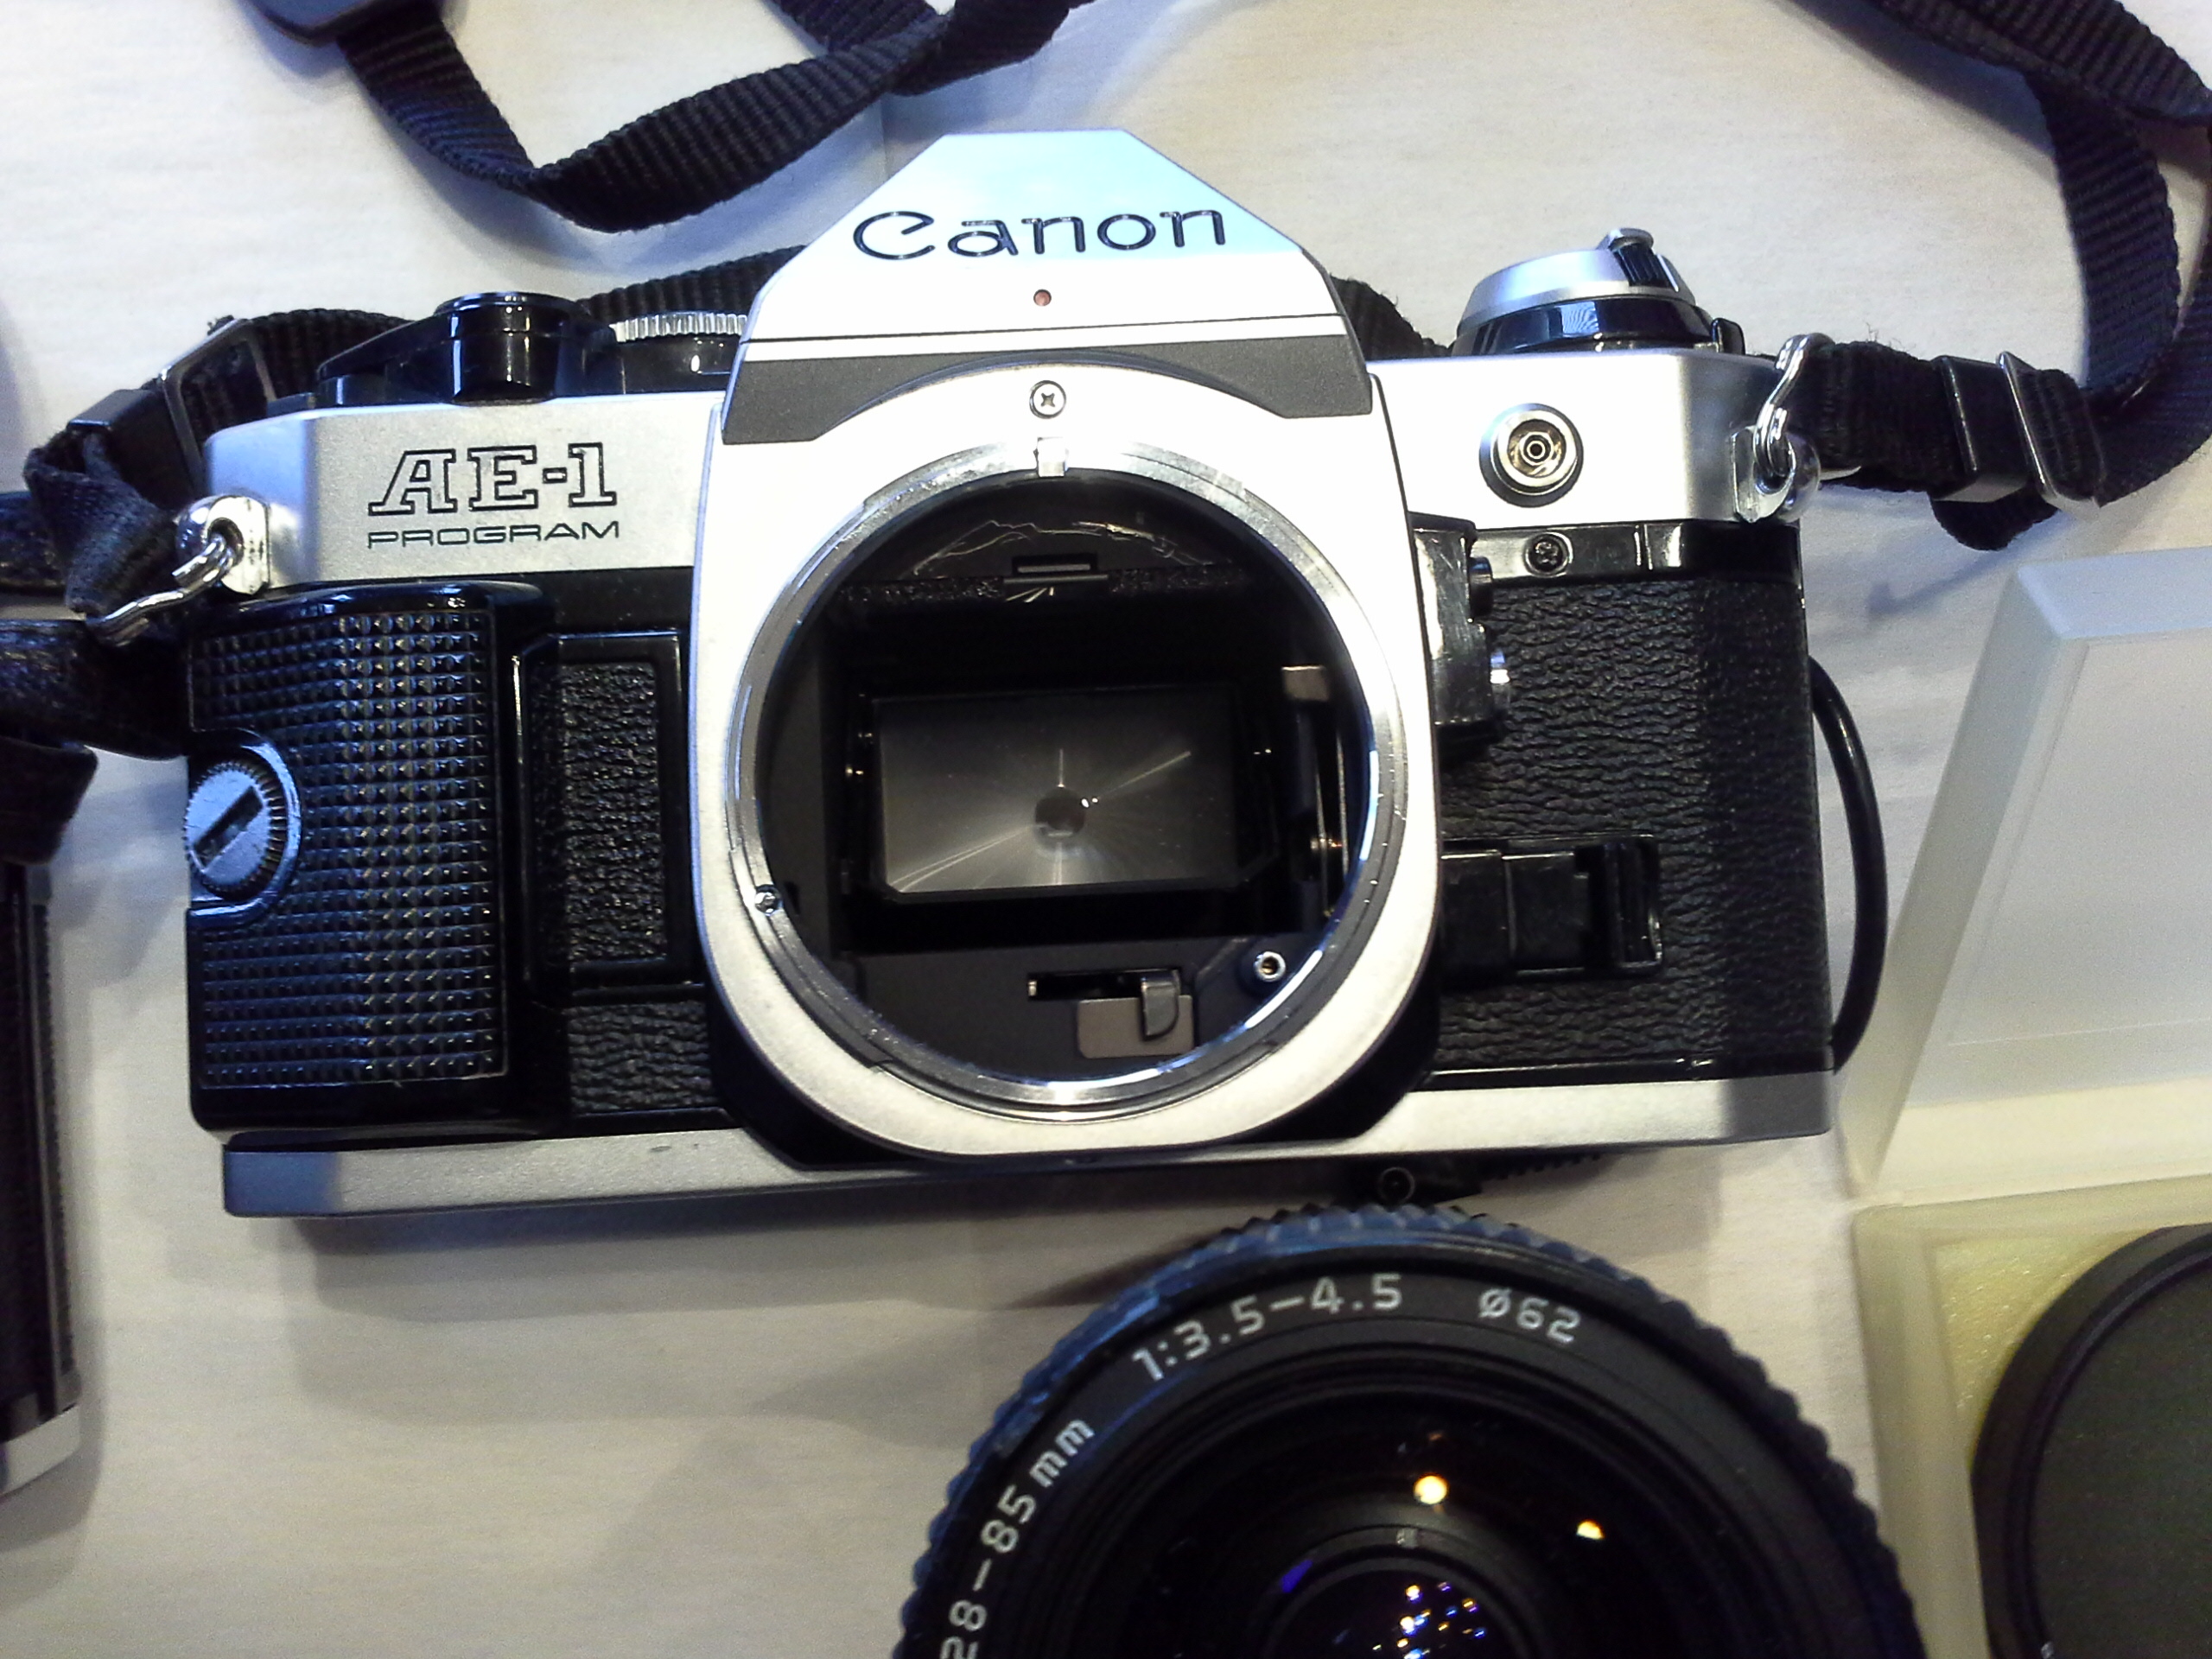 Fotokoffer mit Asahi Pentax Spotmatic Kamera und Canon AE-1 Kamera und Zubehör